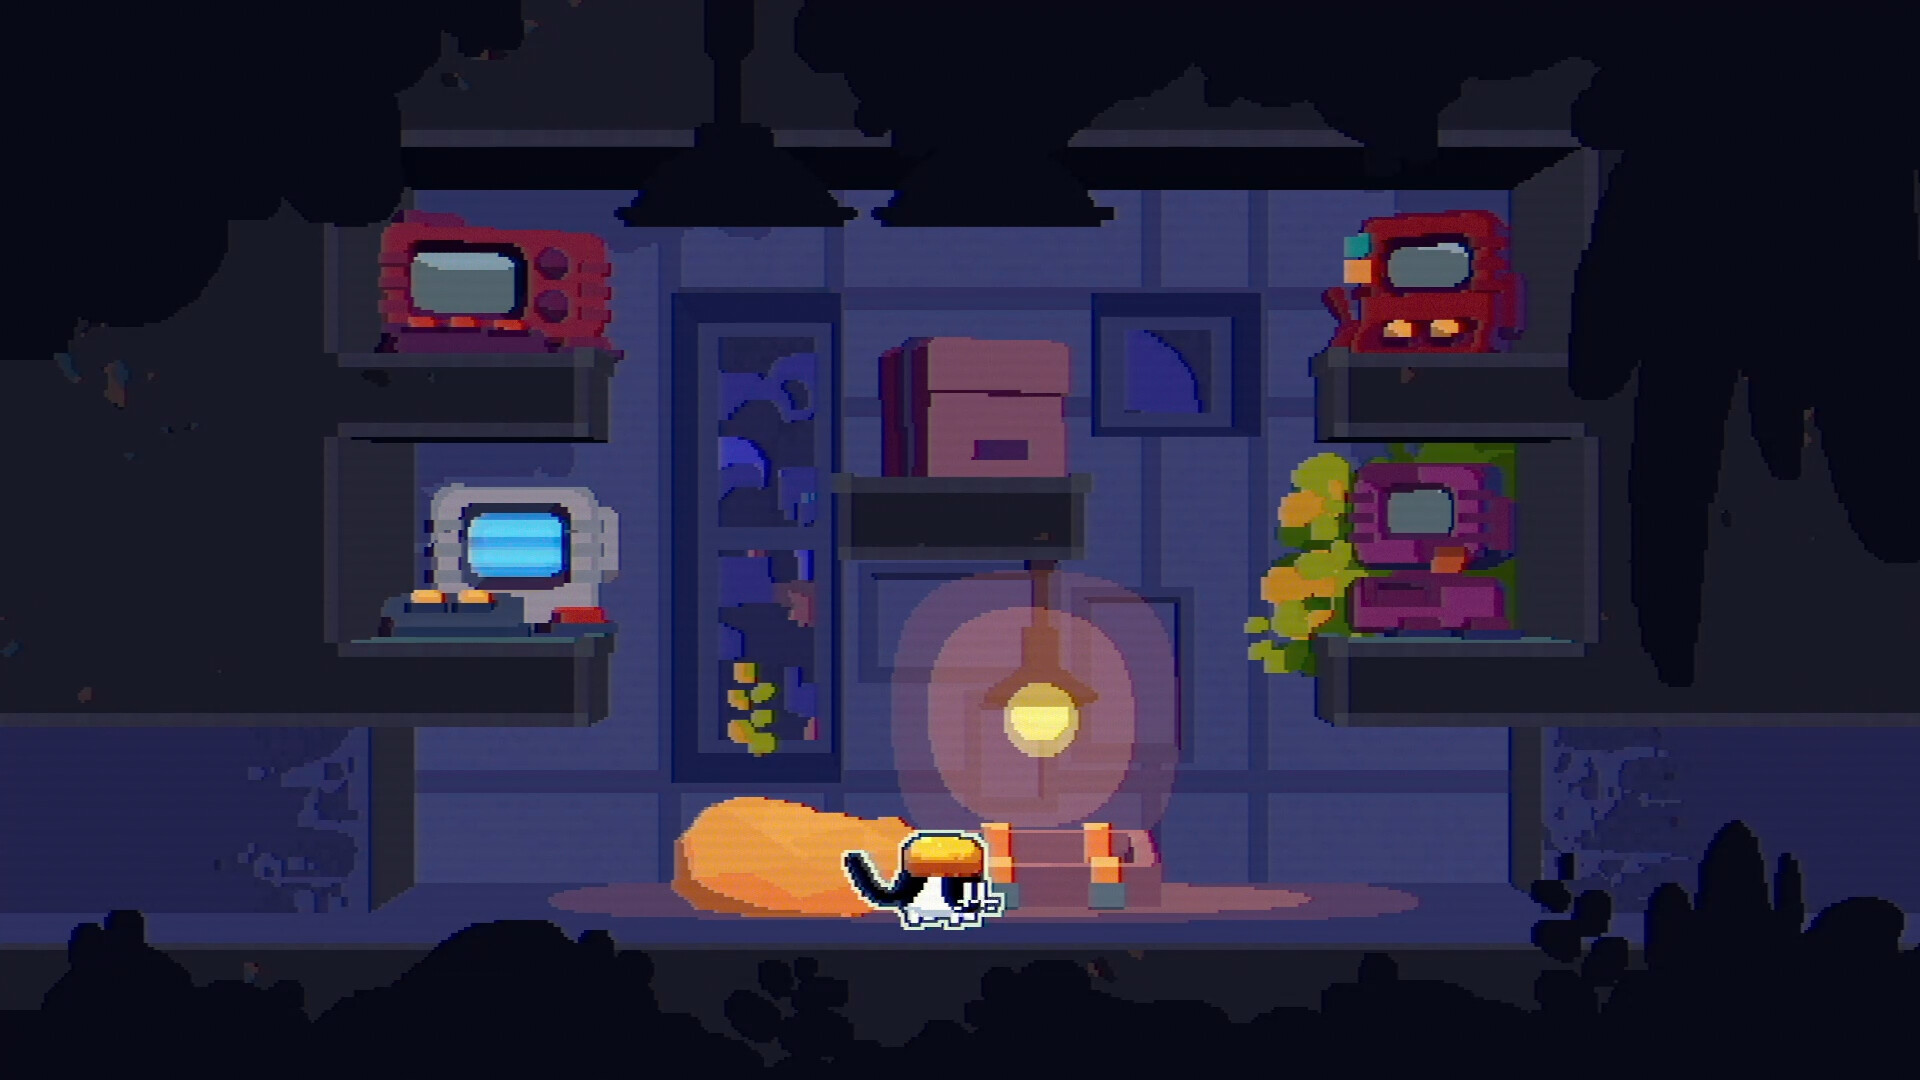 平台解密游戏《CATO 黄油猫》推出最新试玩Demo 包含24个关卡